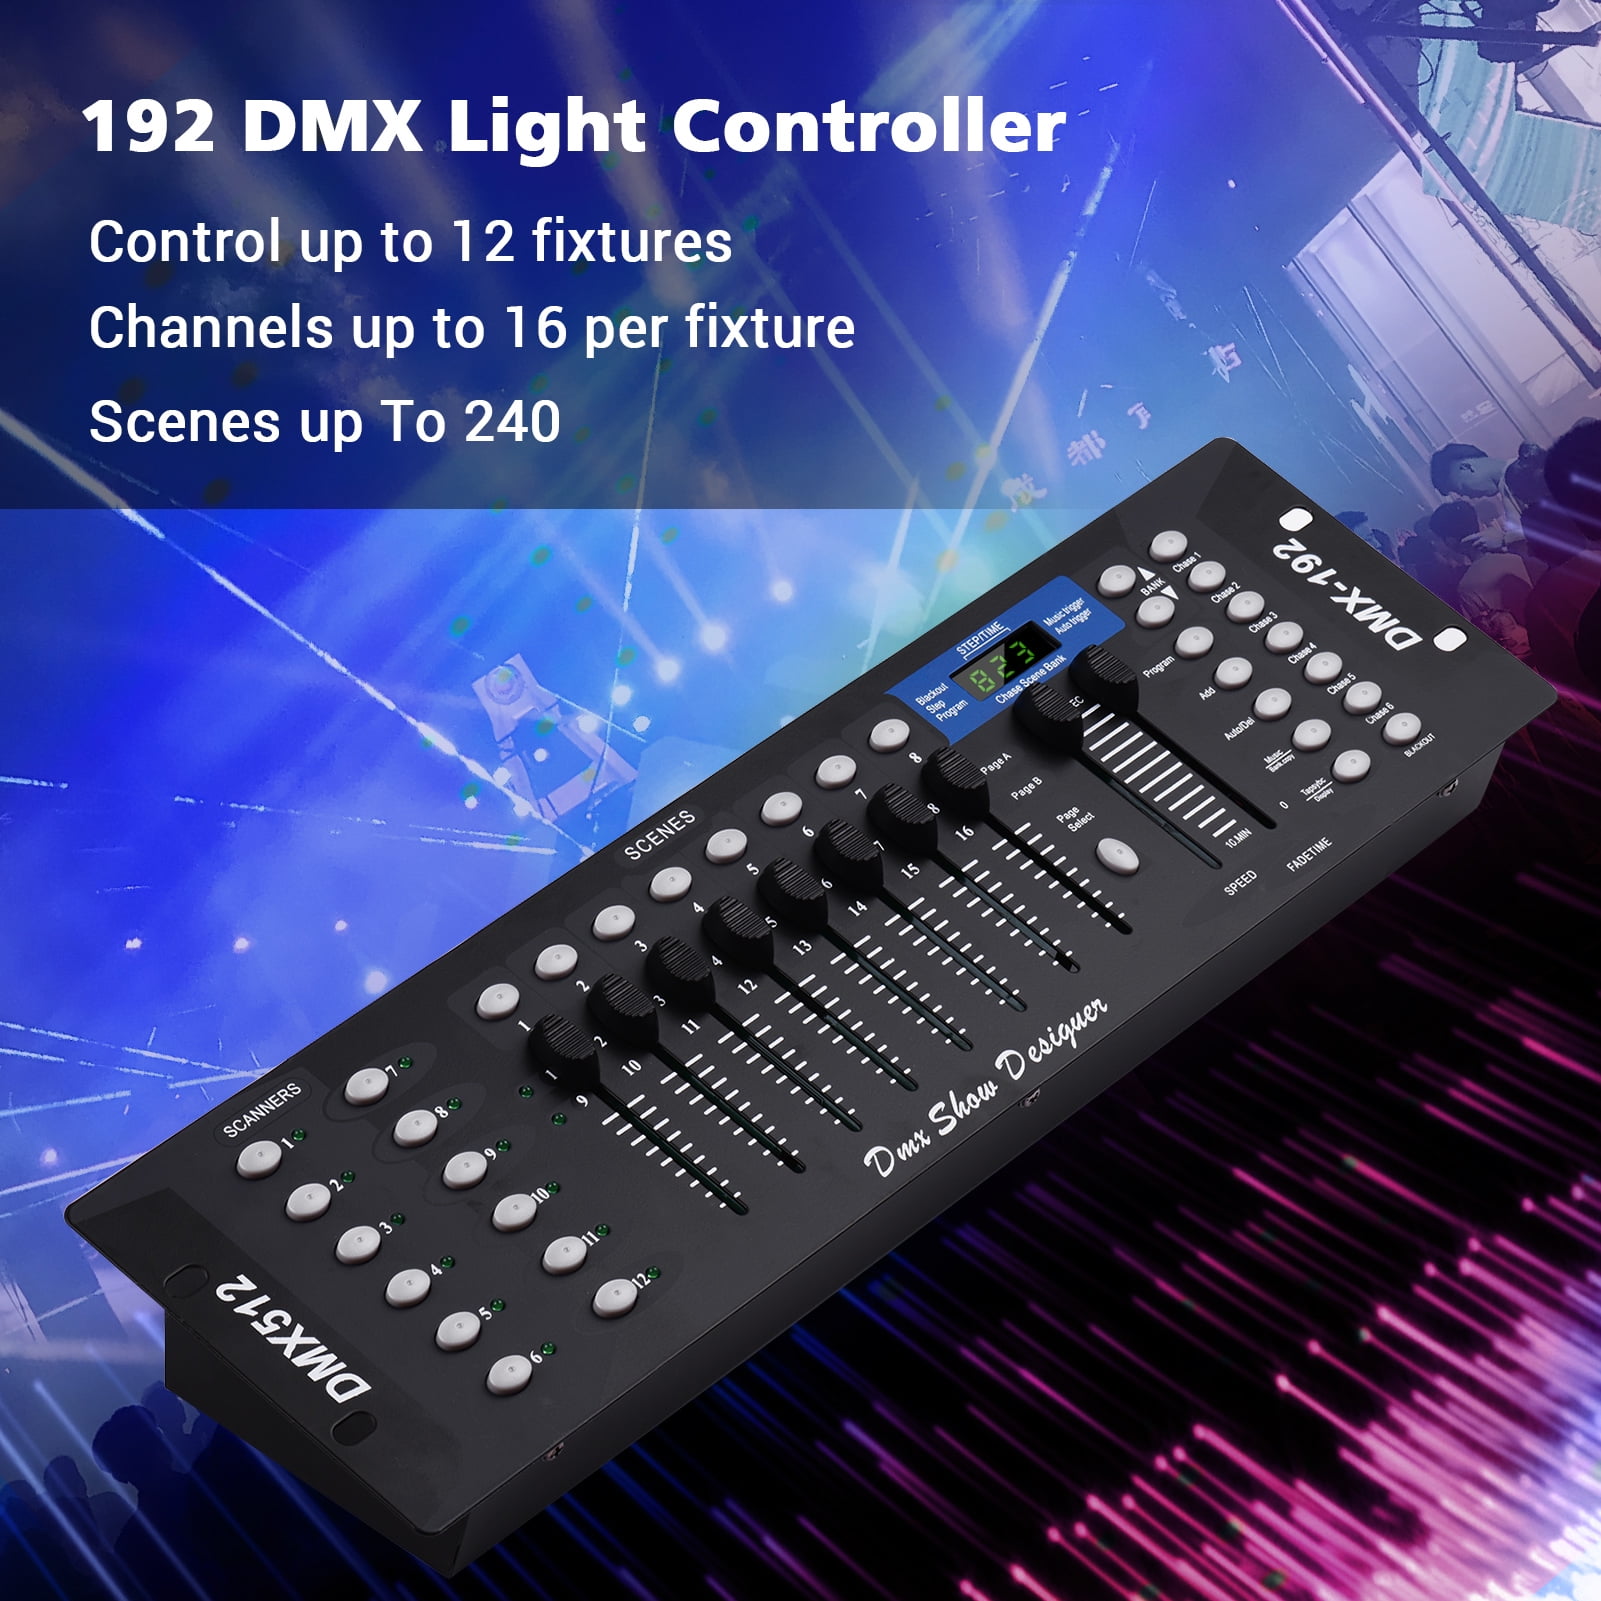 Console DMX Controleur PAR CONTROL Contest – By dreamX